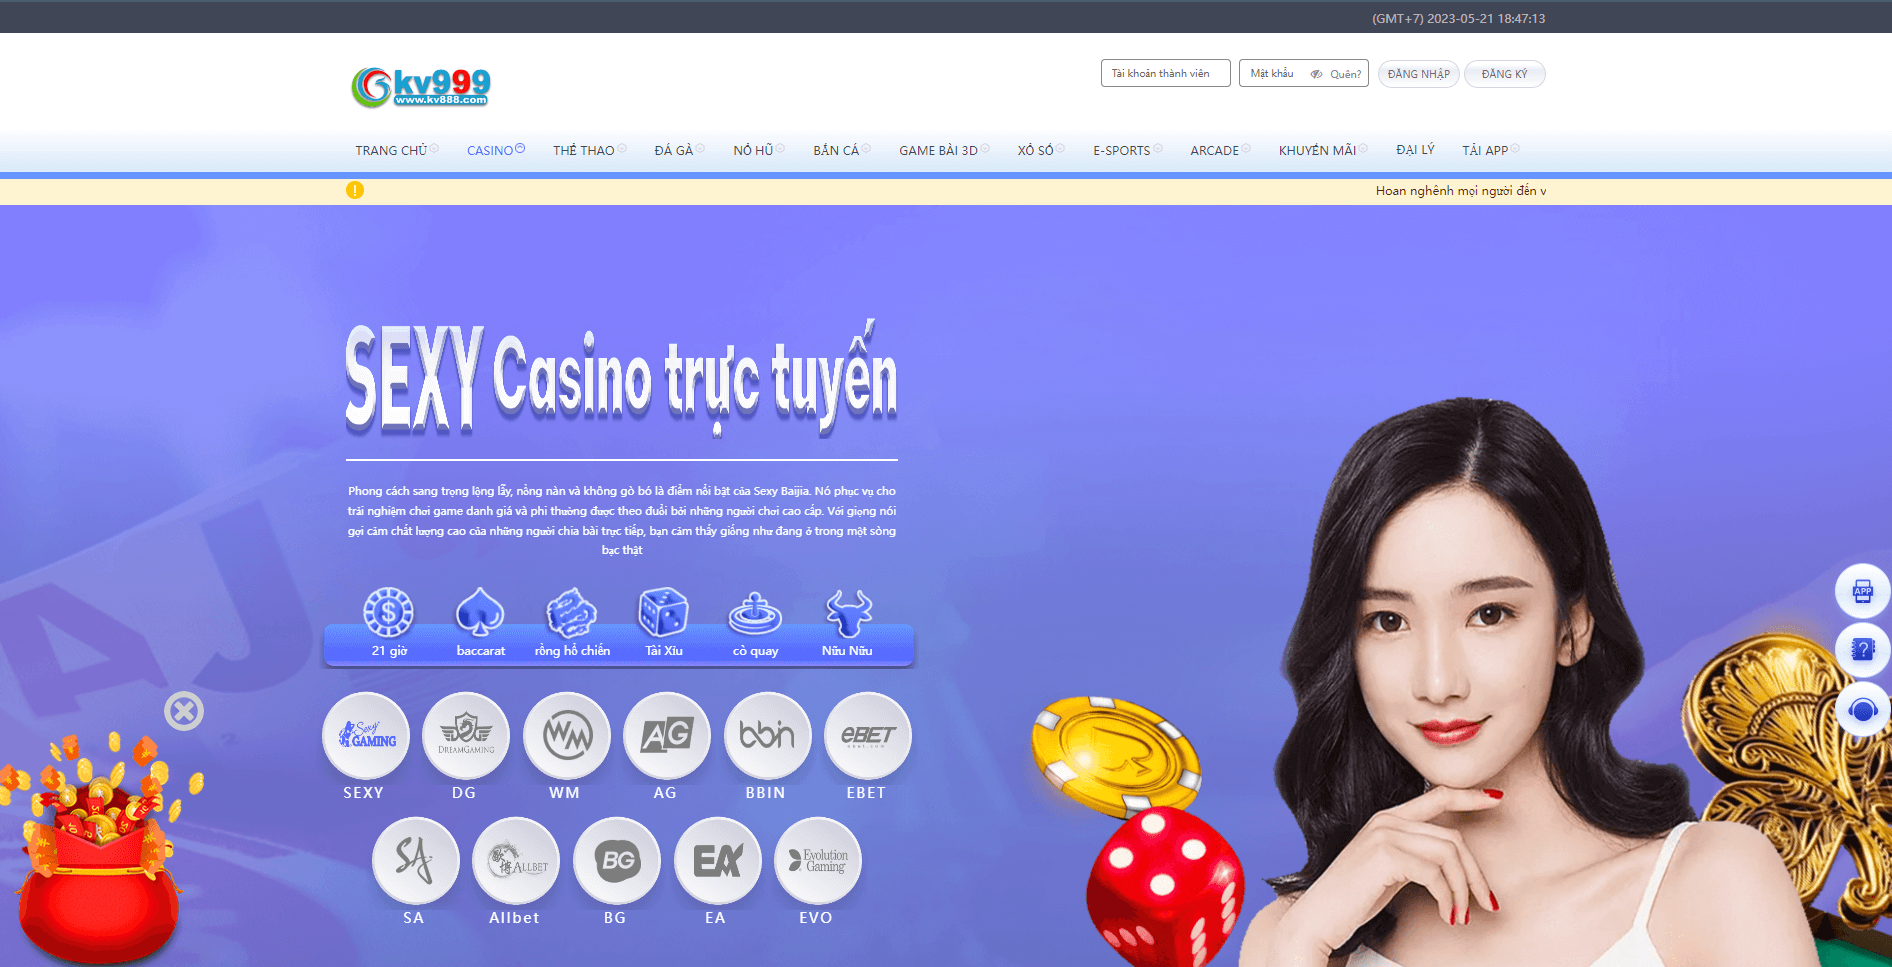 Casino online tại Kv888 được đầu tư chân thực sống động